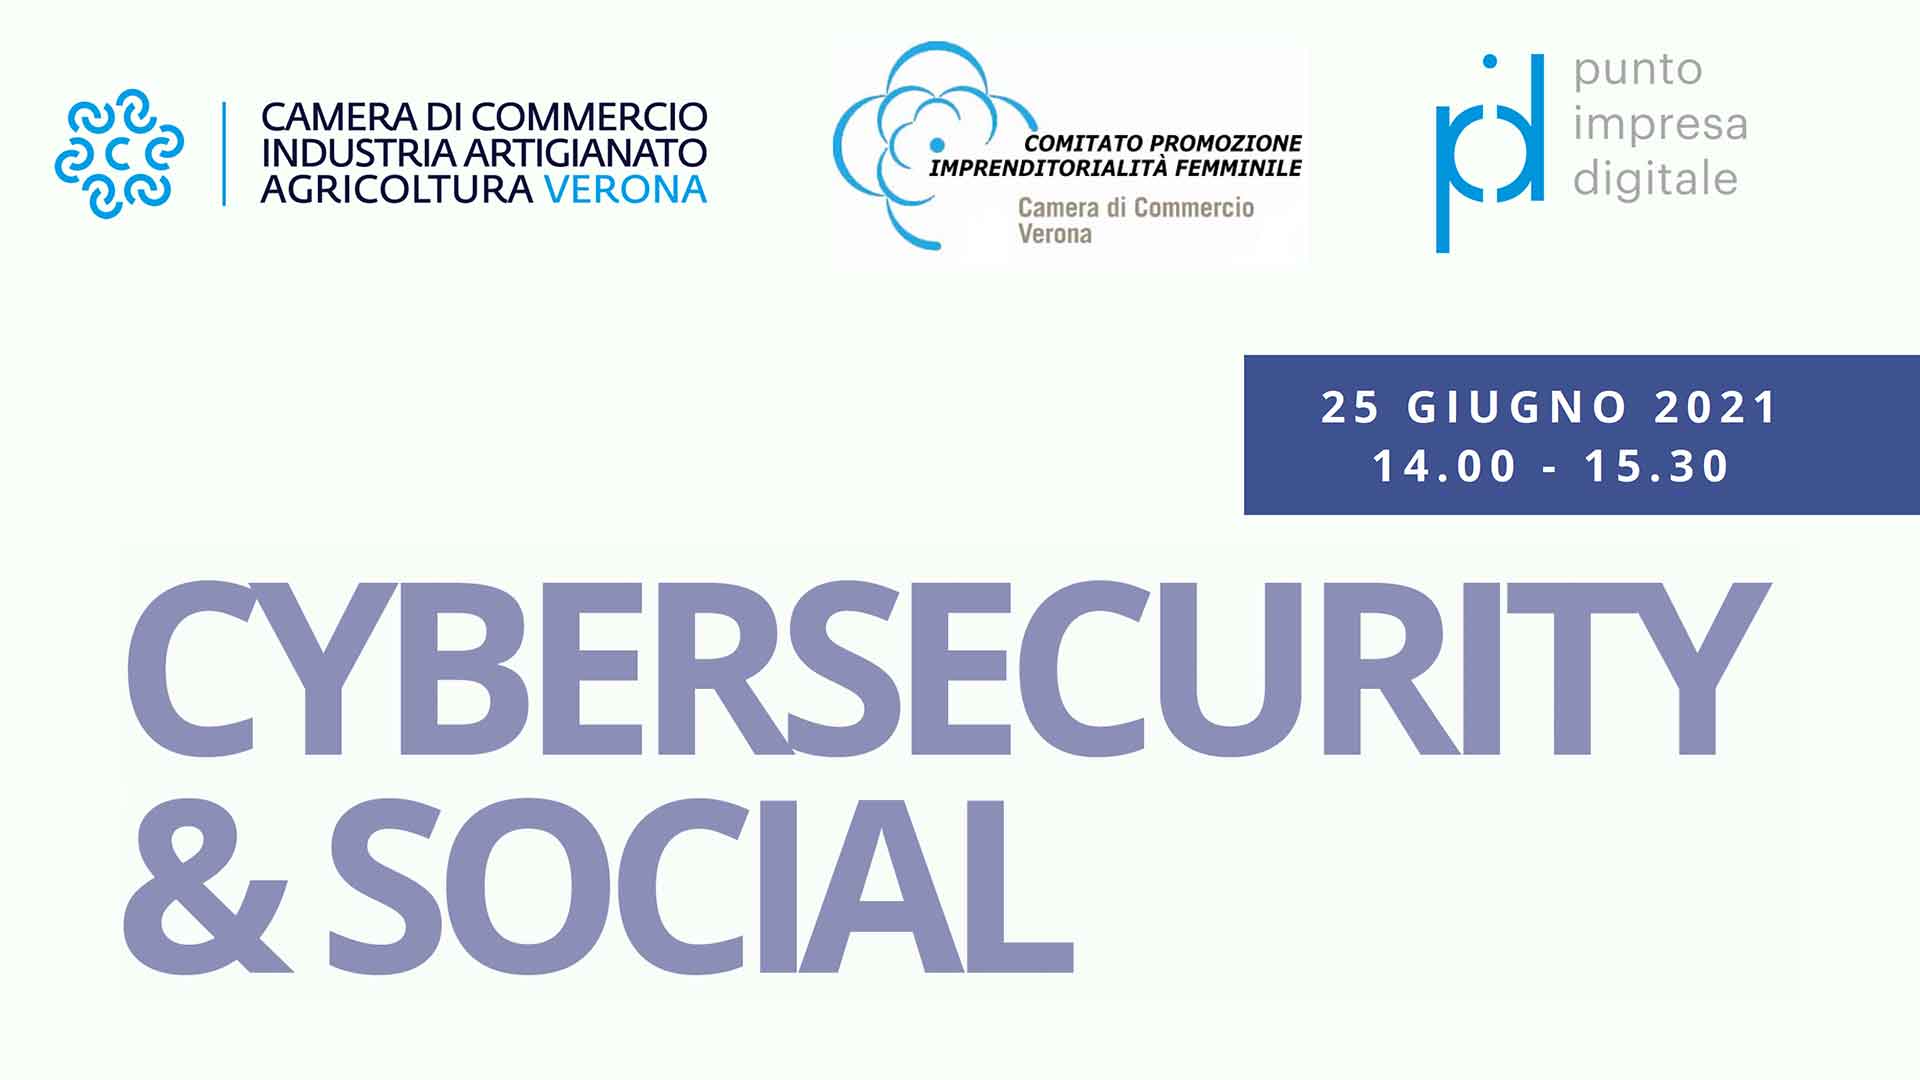 DONNE IMPRESA - Incontri su Cybersecurity organizzati da Comitato Imprenditoria Femminile CCIAA Verona. Si parte il 25 giugno